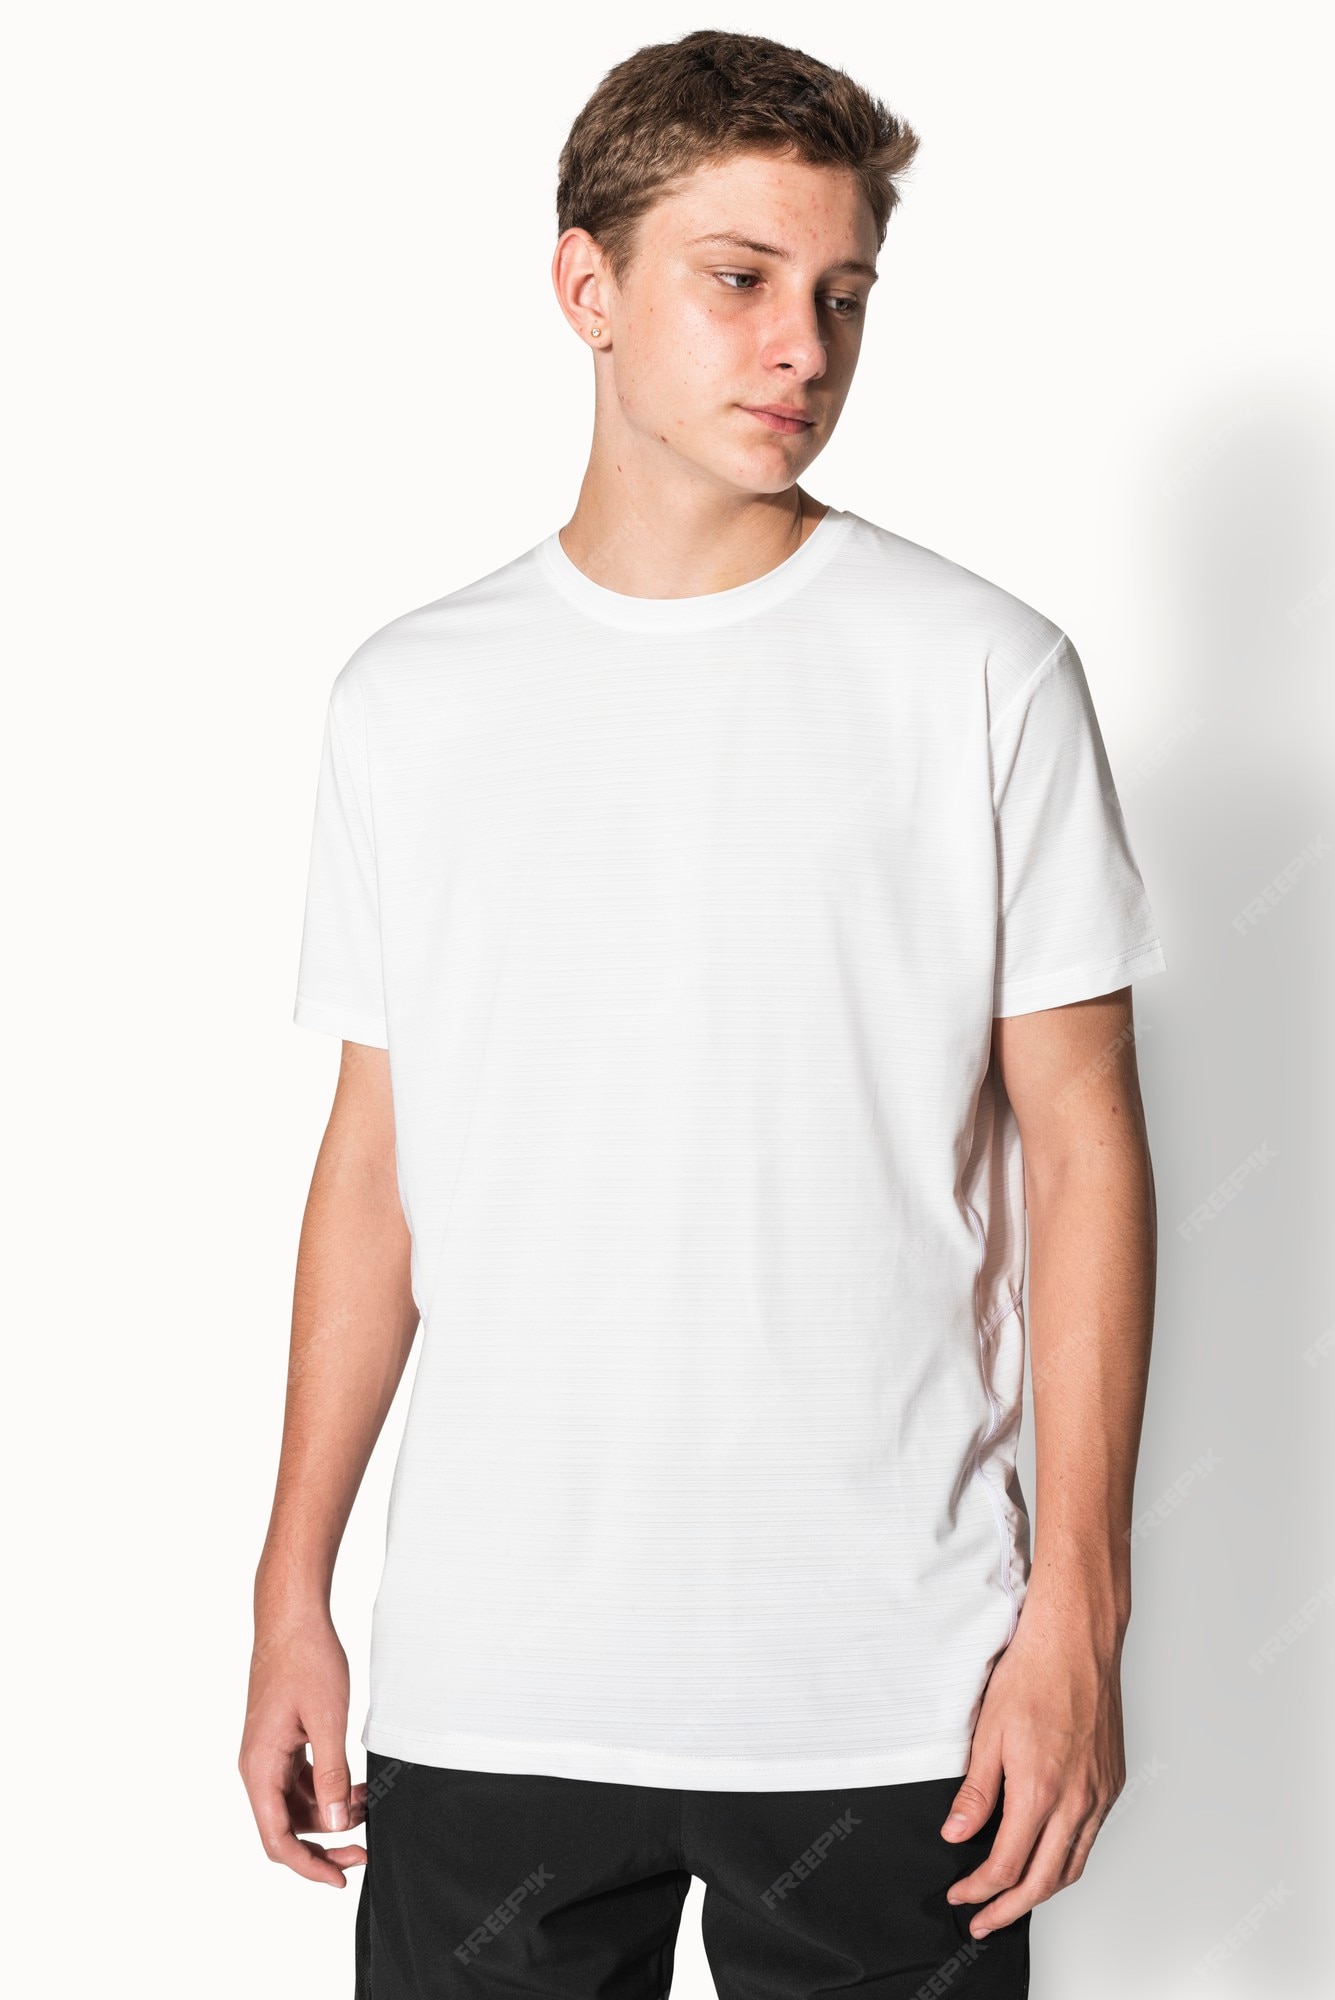 Portero Altitud Dejar abajo Camiseta básica blanca para sesión de estudio de ropa para chicos  adolescentes | Foto Gratis